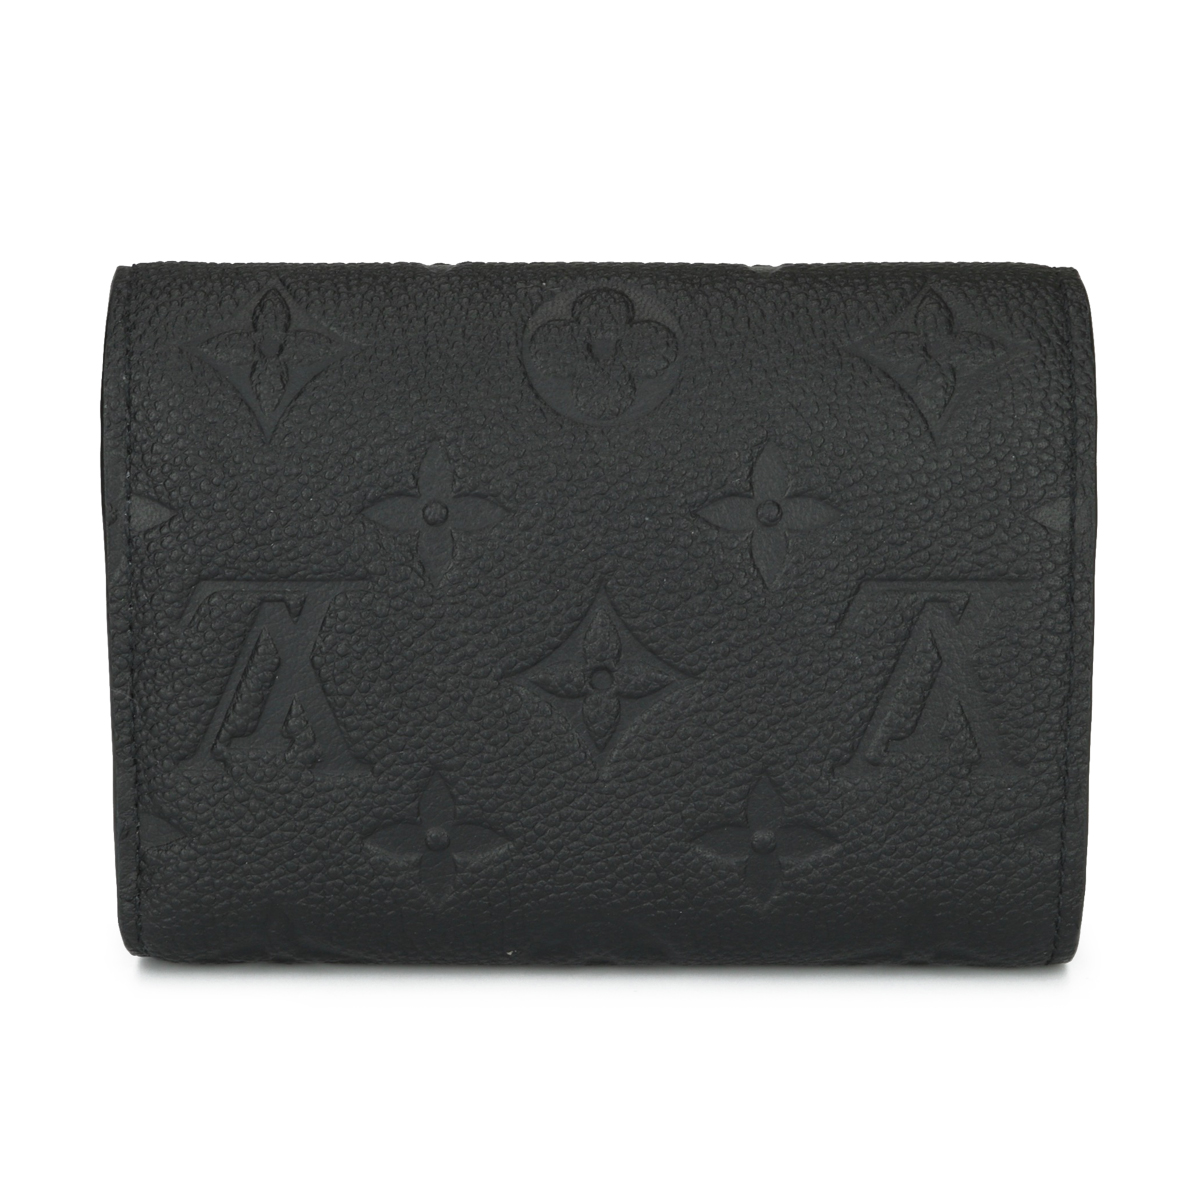 Replica Louis Vuitton M60171 Clemence Wallet Monogram Empreinte Leather For  Sale